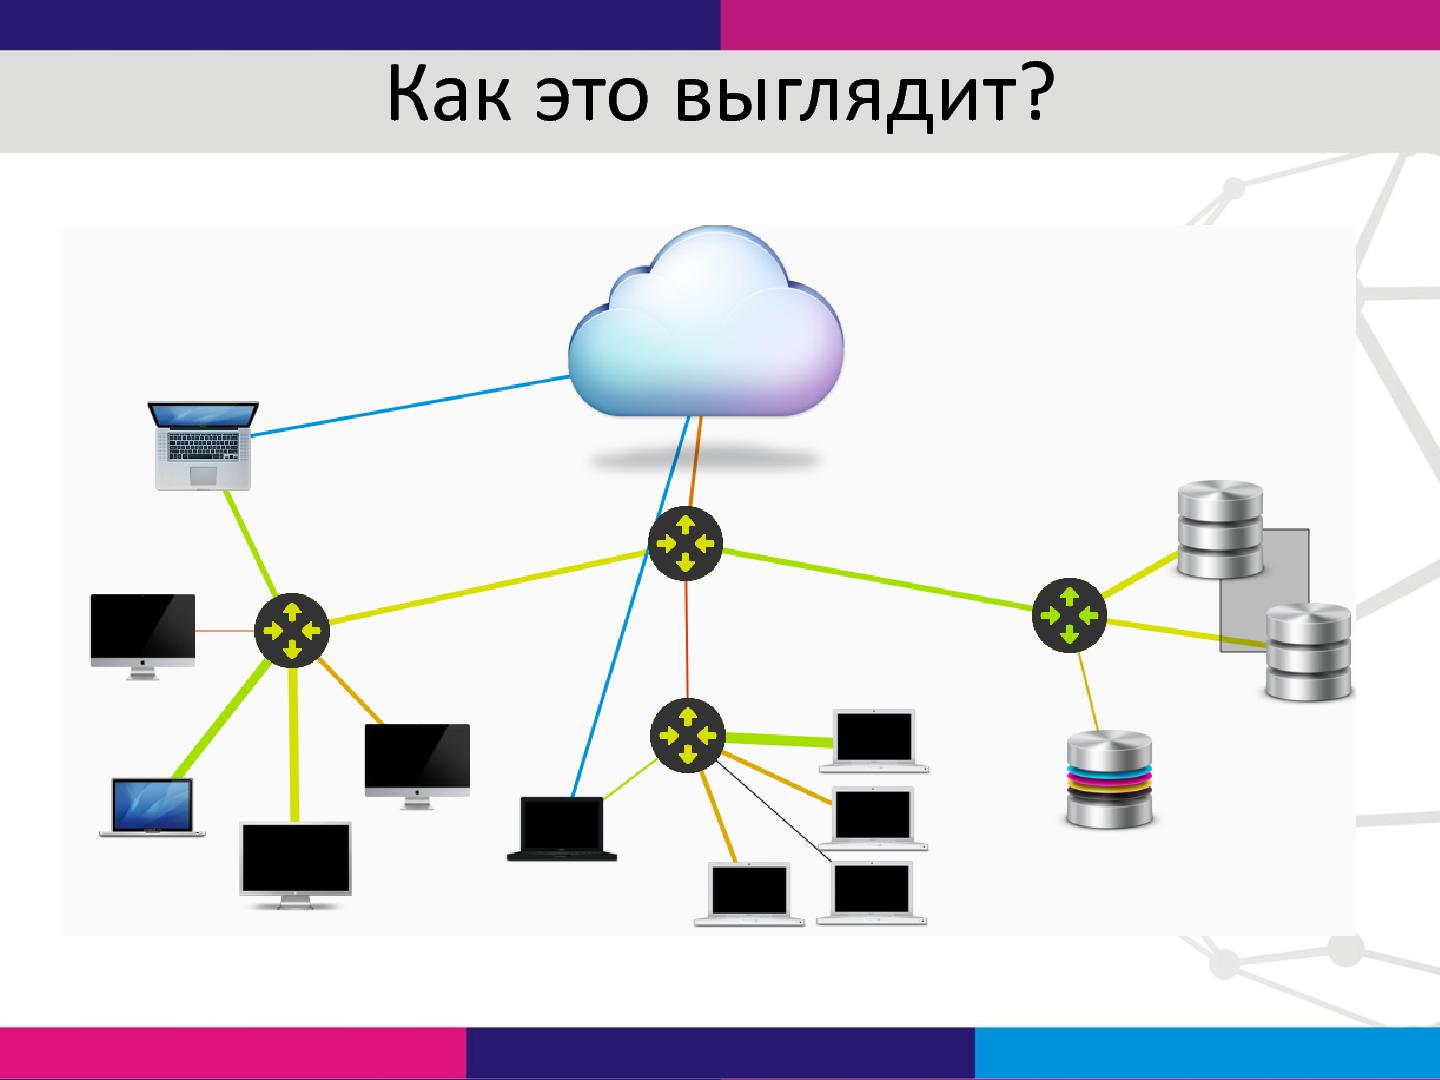 Файл:Управление корпоративной сетью на основе SDN-технологий (Александр Шалимов, SECR-2014).pdf